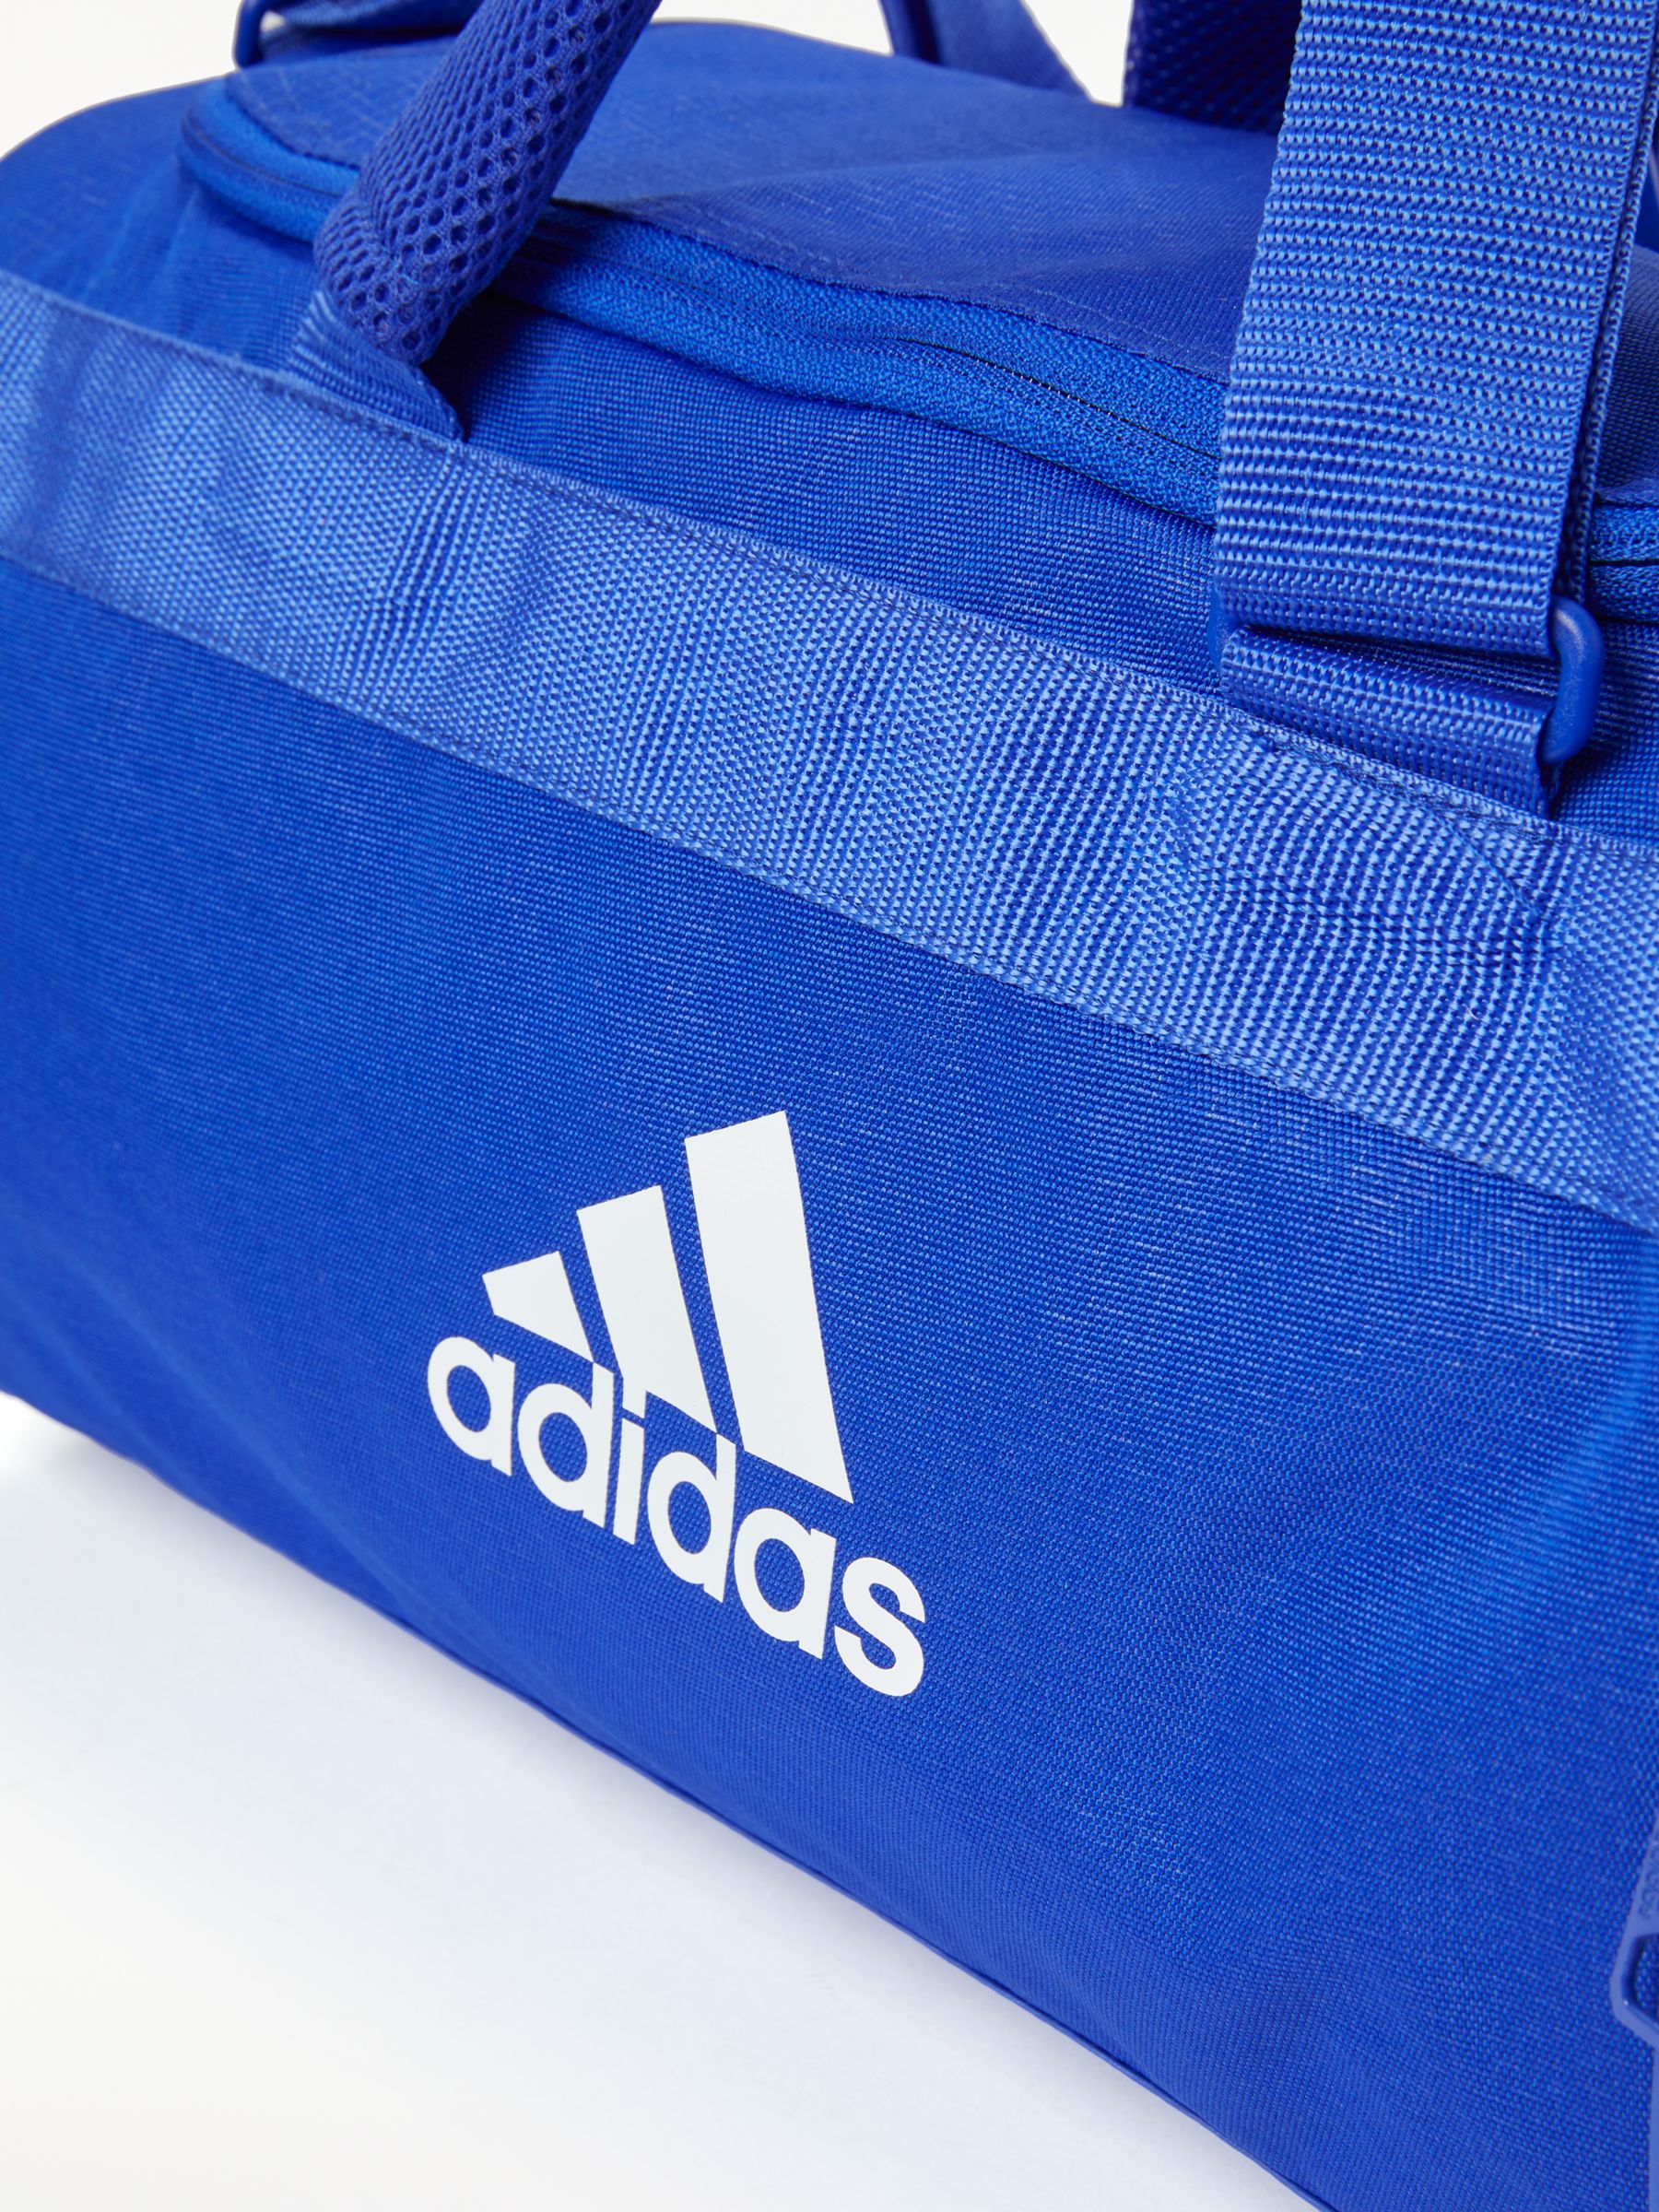 galón giro incidente Adidas Training Core Bag, Small, Bold Blue